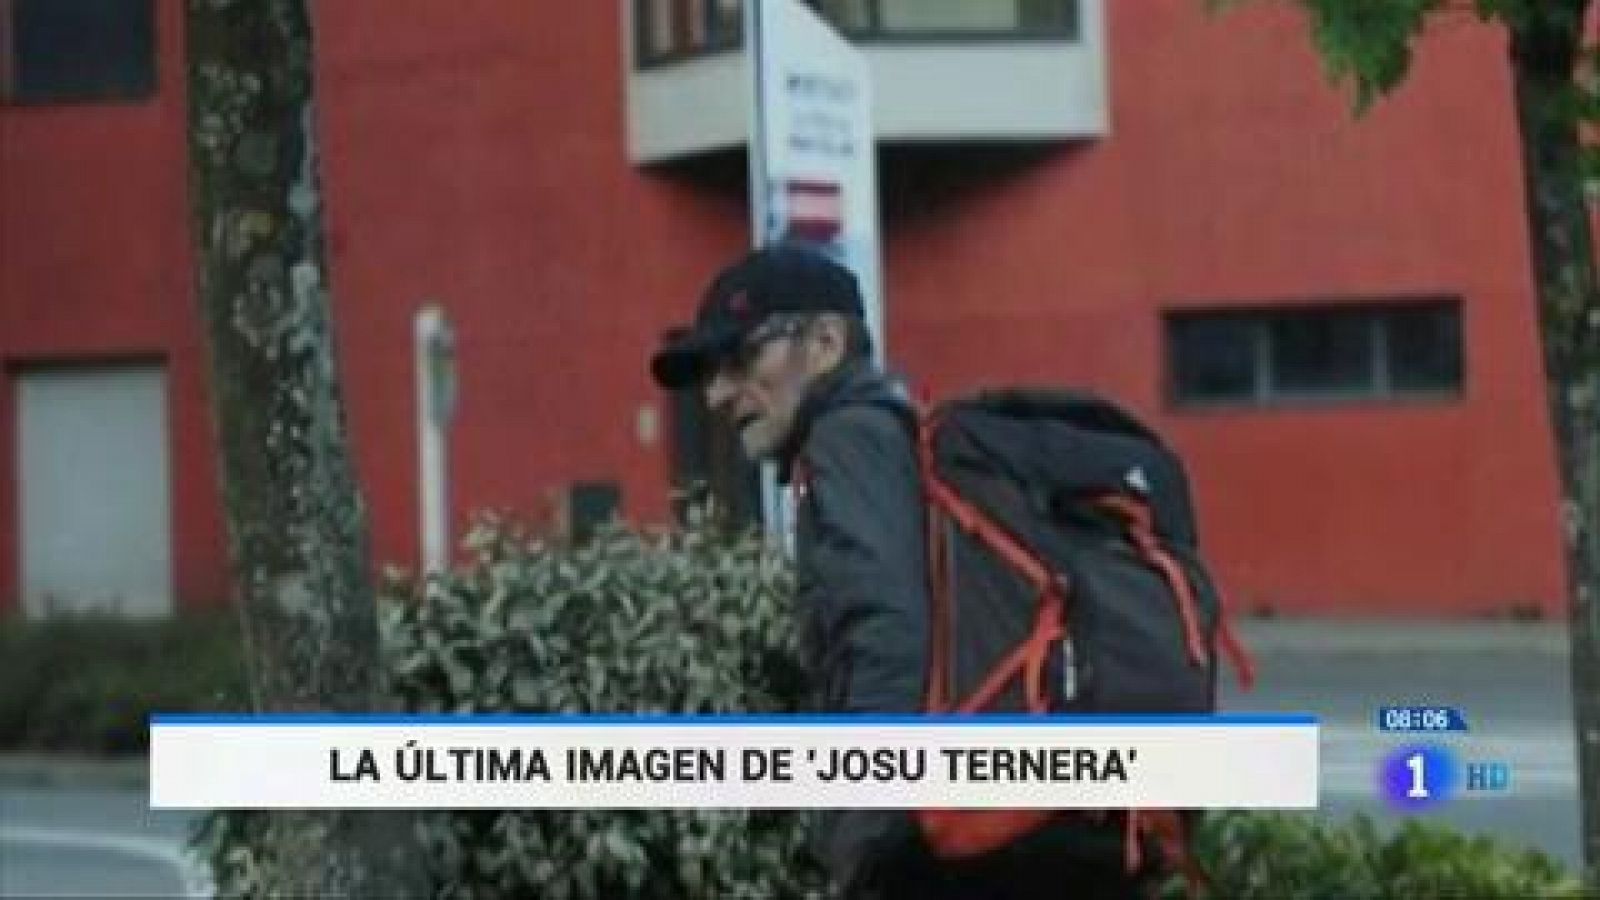 Terrorismo: El seguimiento a un colaborador de Josu Ternera permitió su detención - RTVE.es